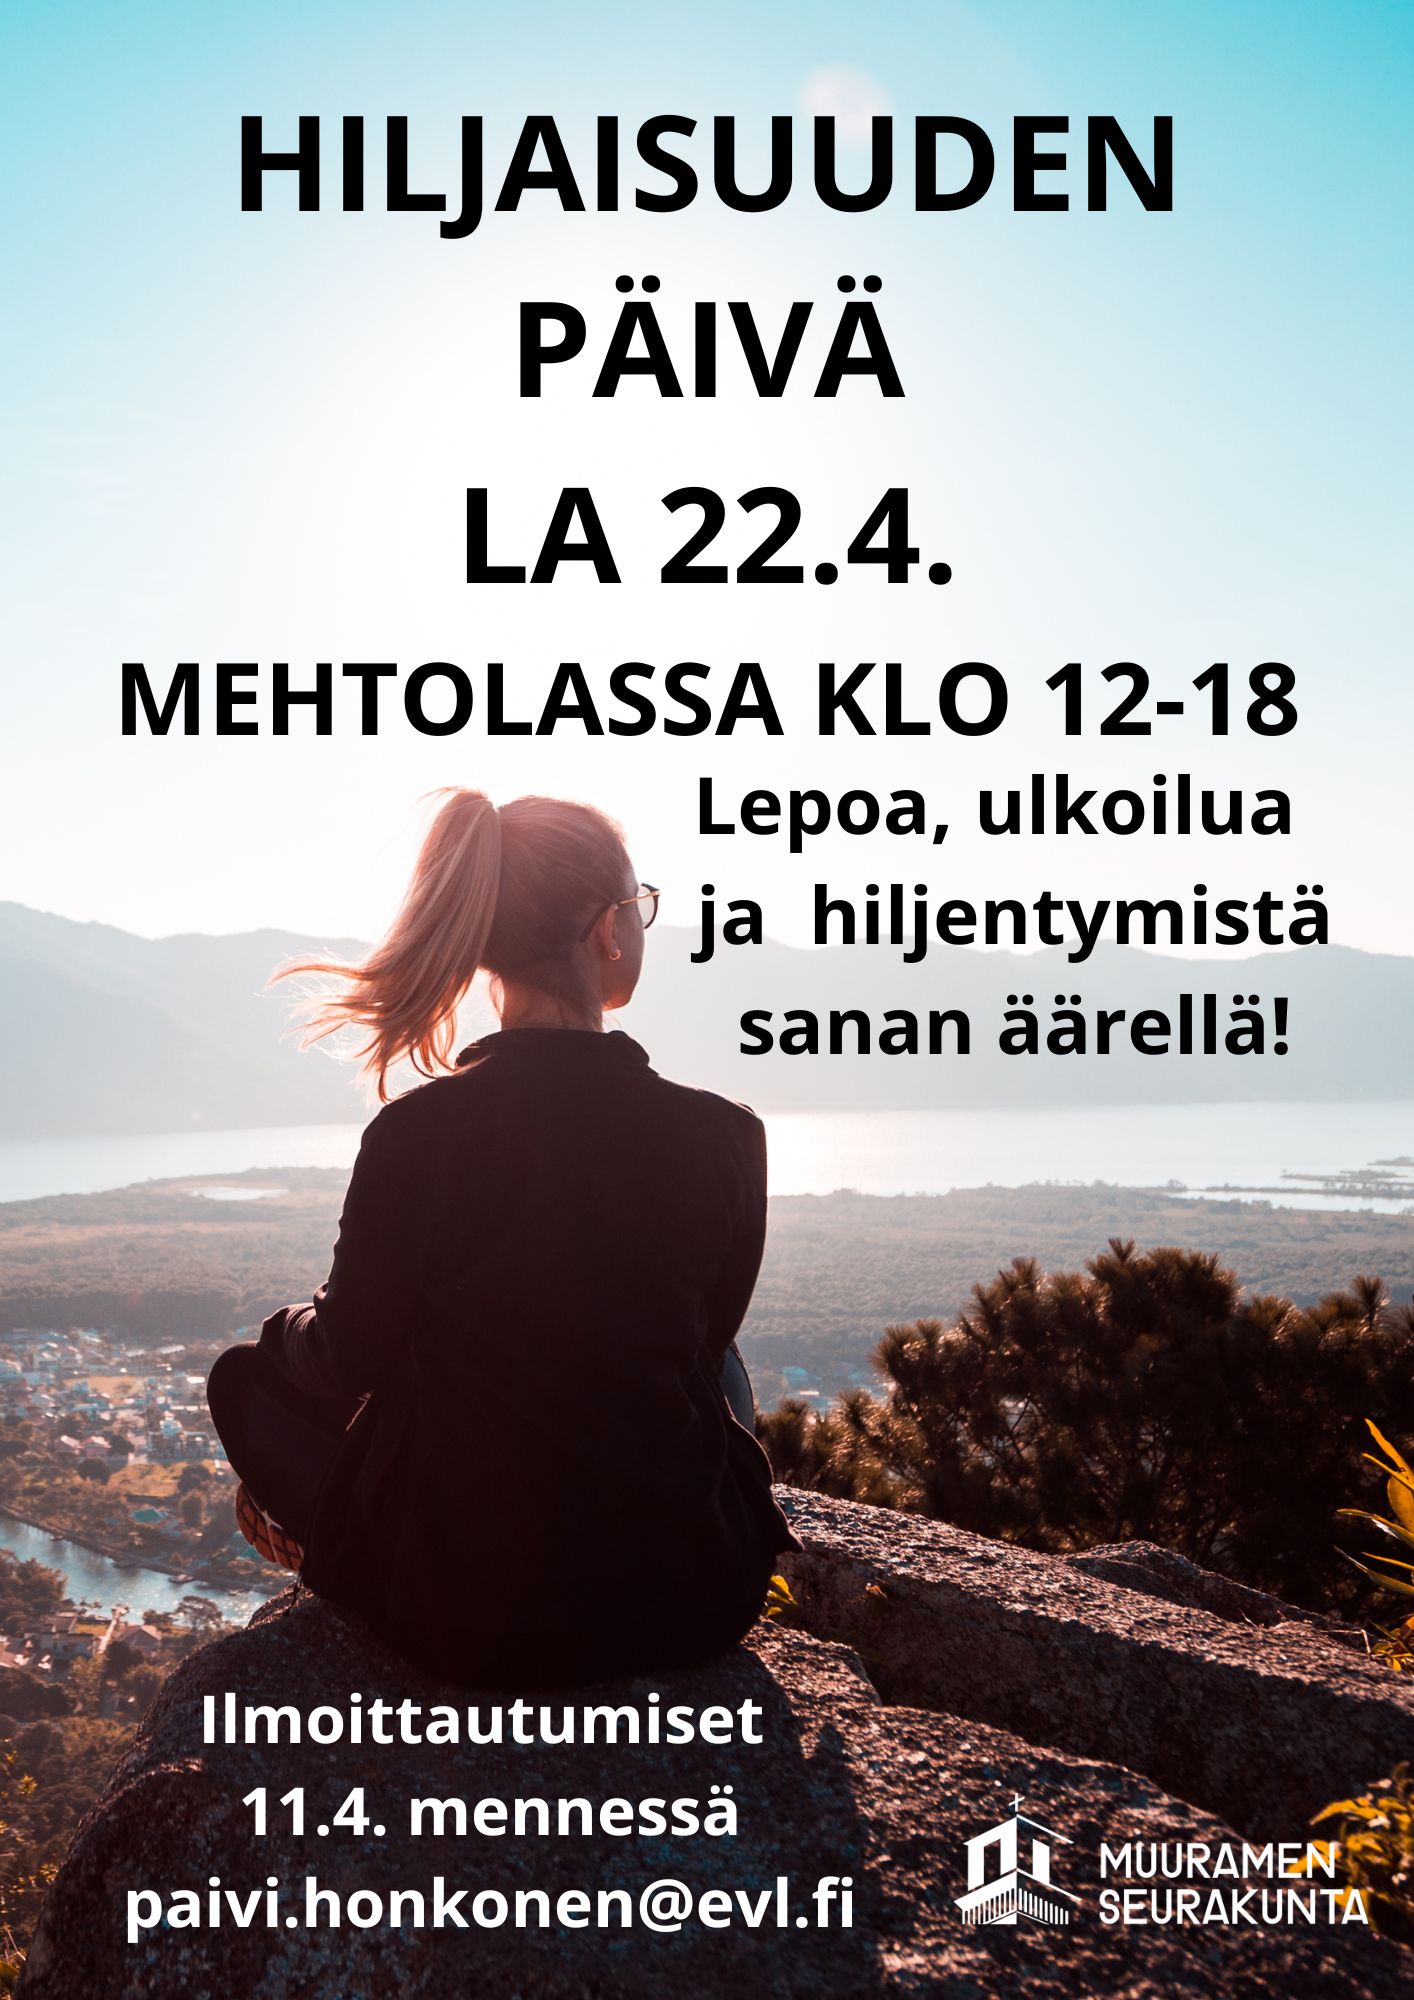 Hiljaisuudenpäivä Mehtolassa la 22.4. klo 12-18. Kuvassa nainen istuu maassa ja katsoo maisemaa.